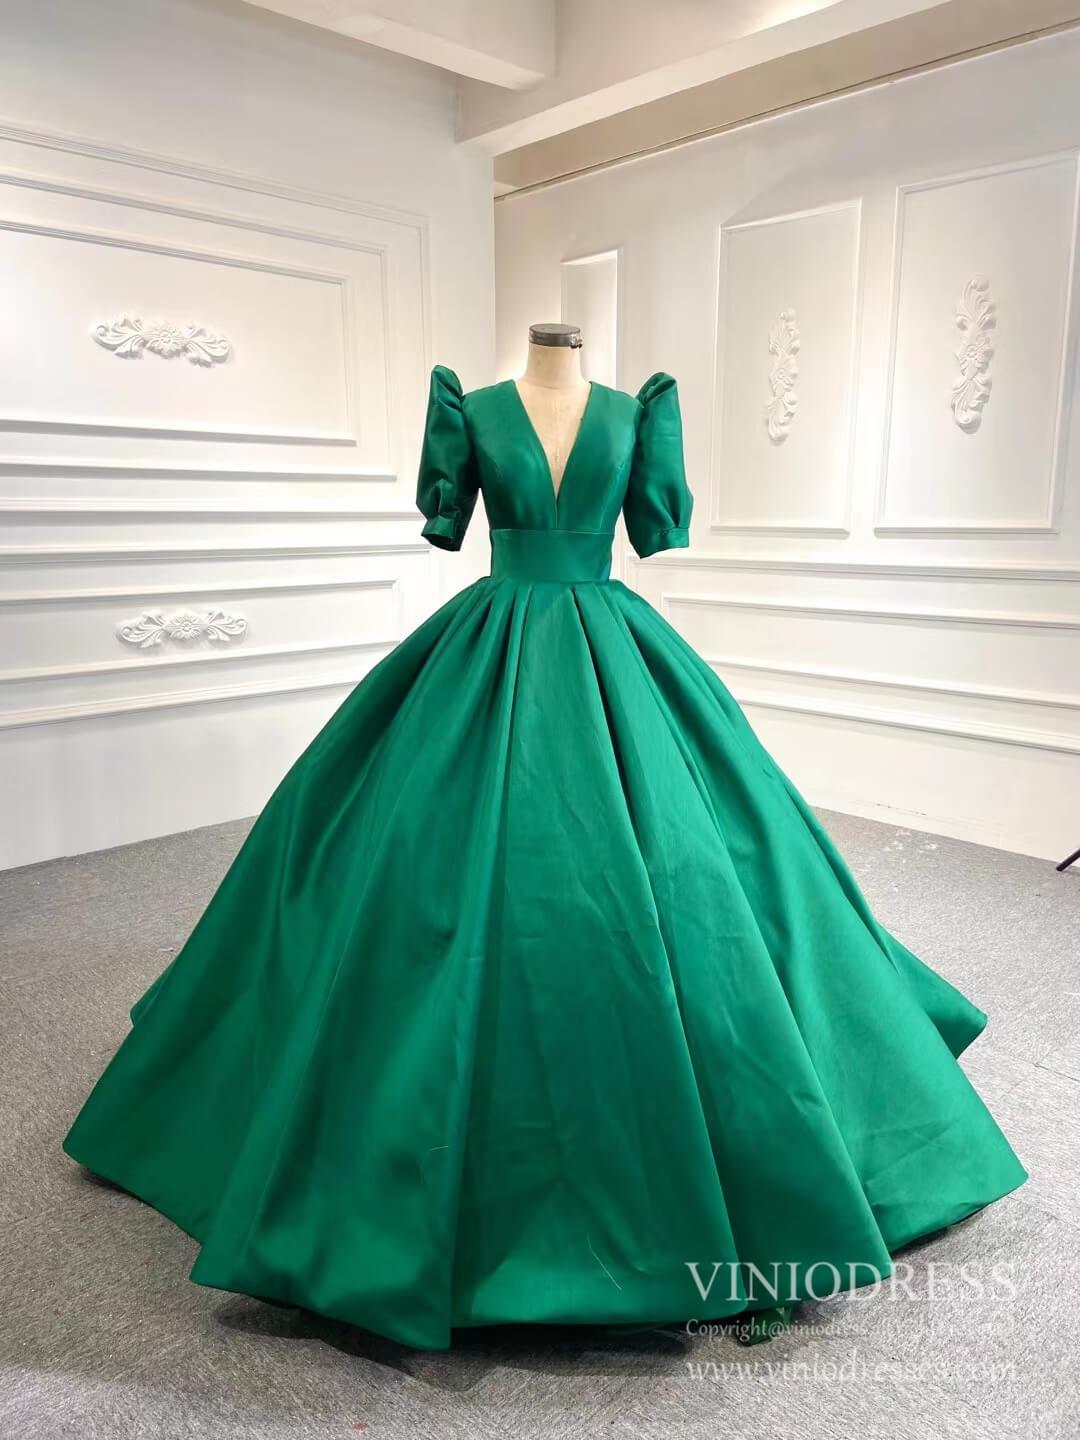 green dresses for women